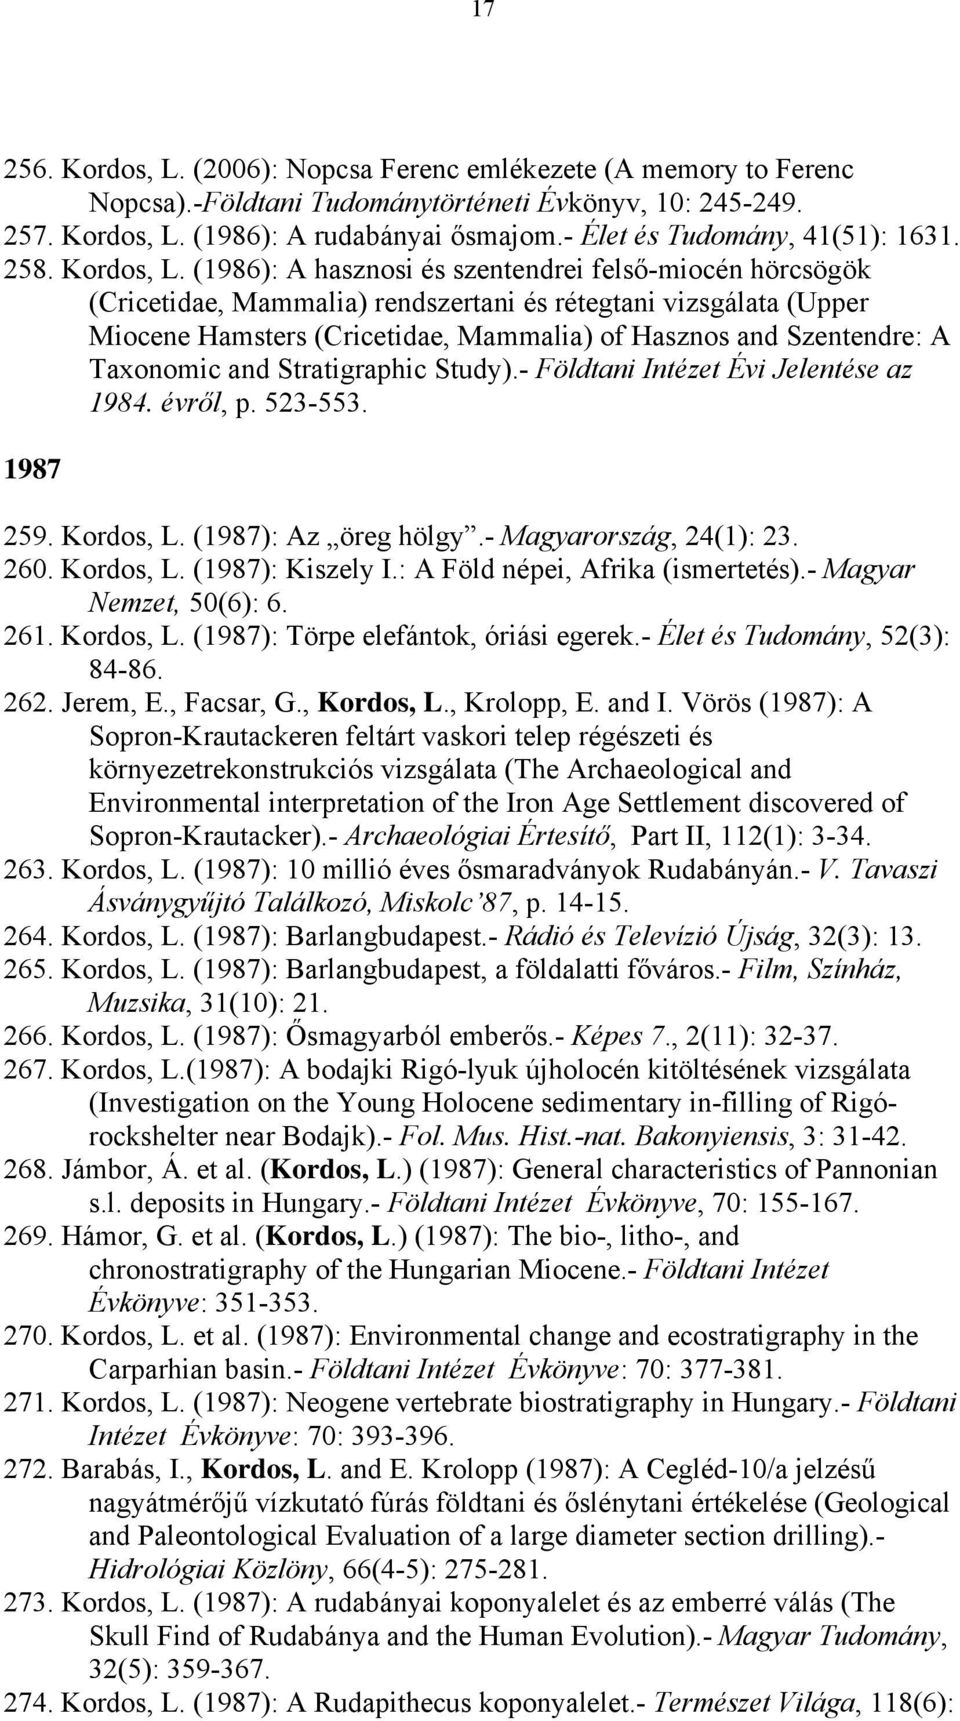 (1986): A hasznosi és szentendrei felső-miocén hörcsögök (Cricetidae, Mammalia) rendszertani és rétegtani vizsgálata (Upper Miocene Hamsters (Cricetidae, Mammalia) of Hasznos and Szentendre: A